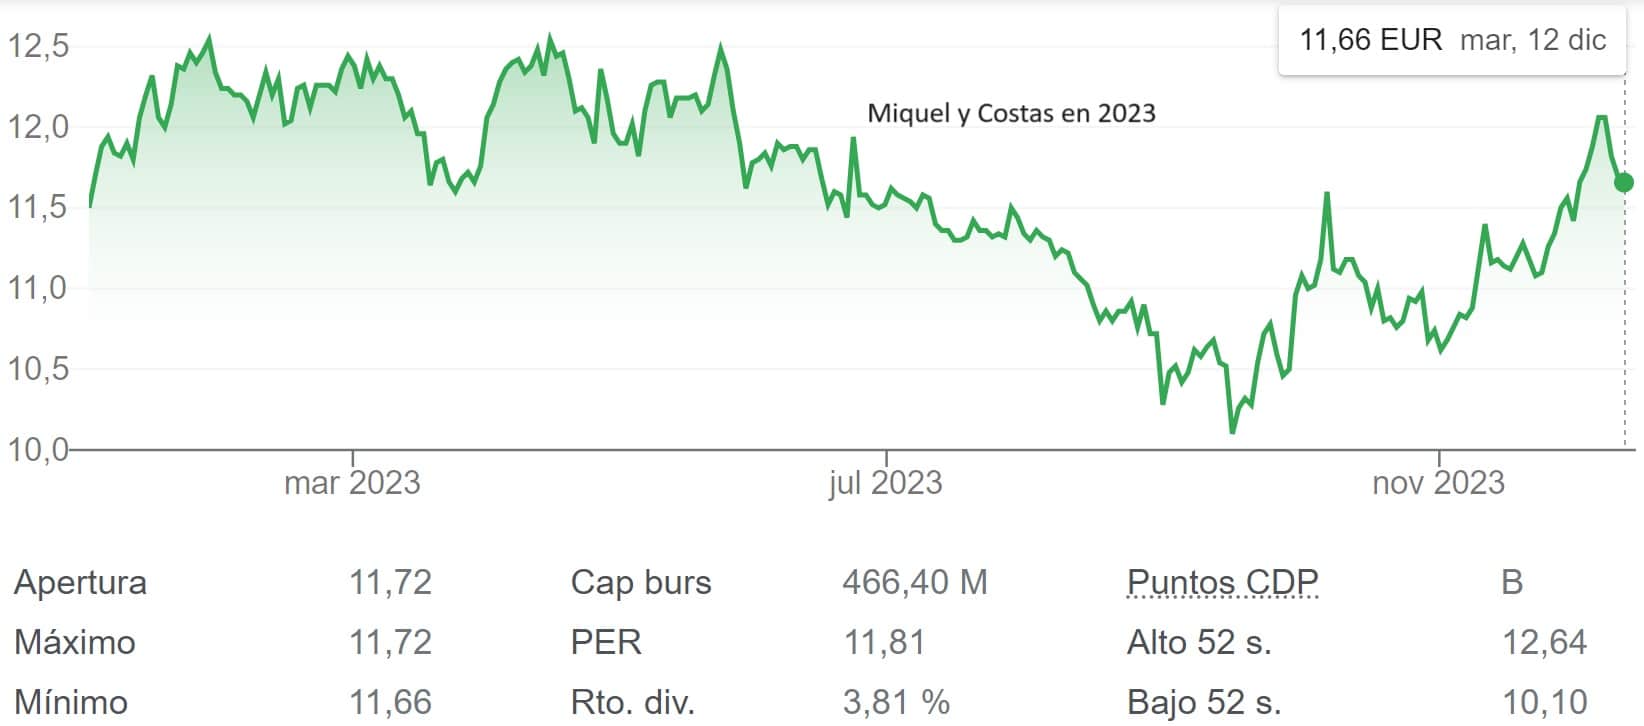 Miquel y Costas abonará el 20 de diciembre un dividendo de 0,10 euros por acción